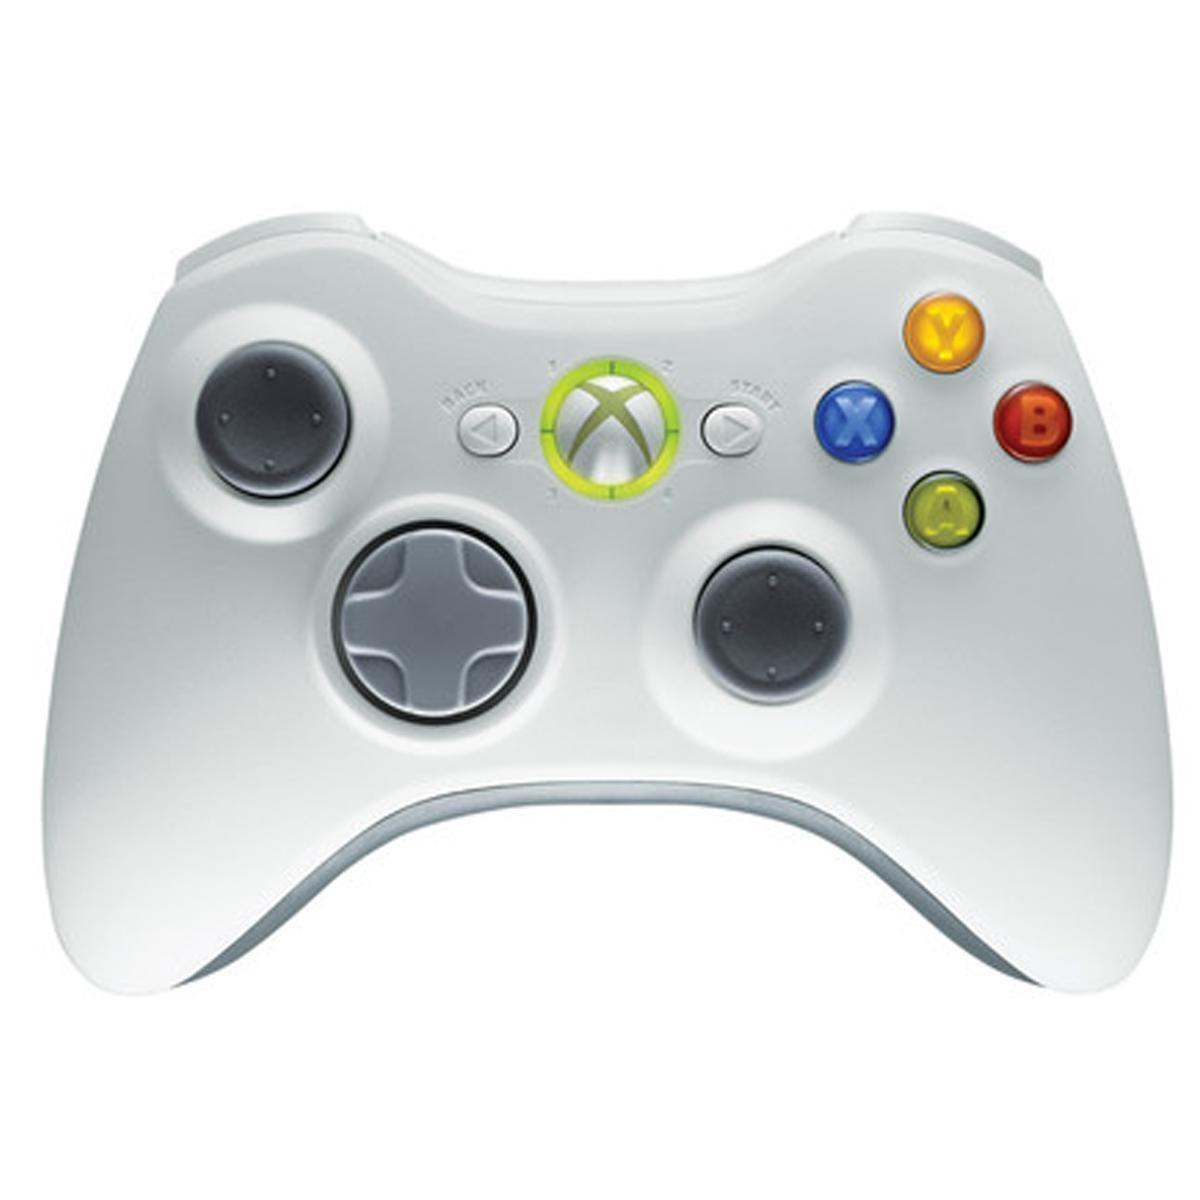 Fysica stoeprand aanwijzing Xbox 360 Controller Wireless - Wit met Custom Zwarte Achterkant - Microsoft  (origineel) kopen - €24.99